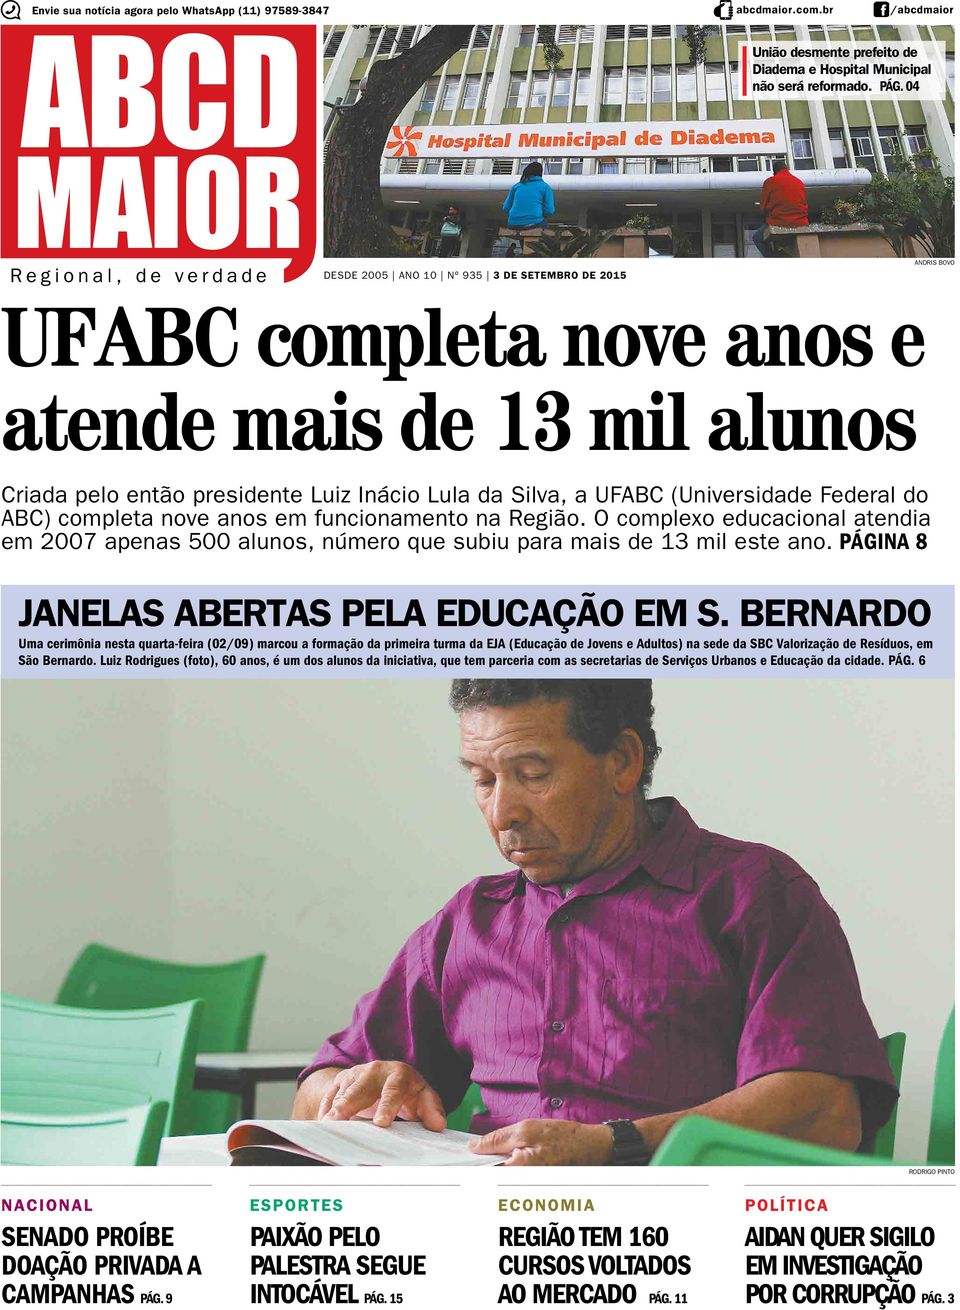 UFABC (Universidade Federal do ABC) completa nove anos em funcionamento na Região. O complexo educacional atendia em 2007 apenas 500 alunos, número que subiu para mais de 13 mil este ano.